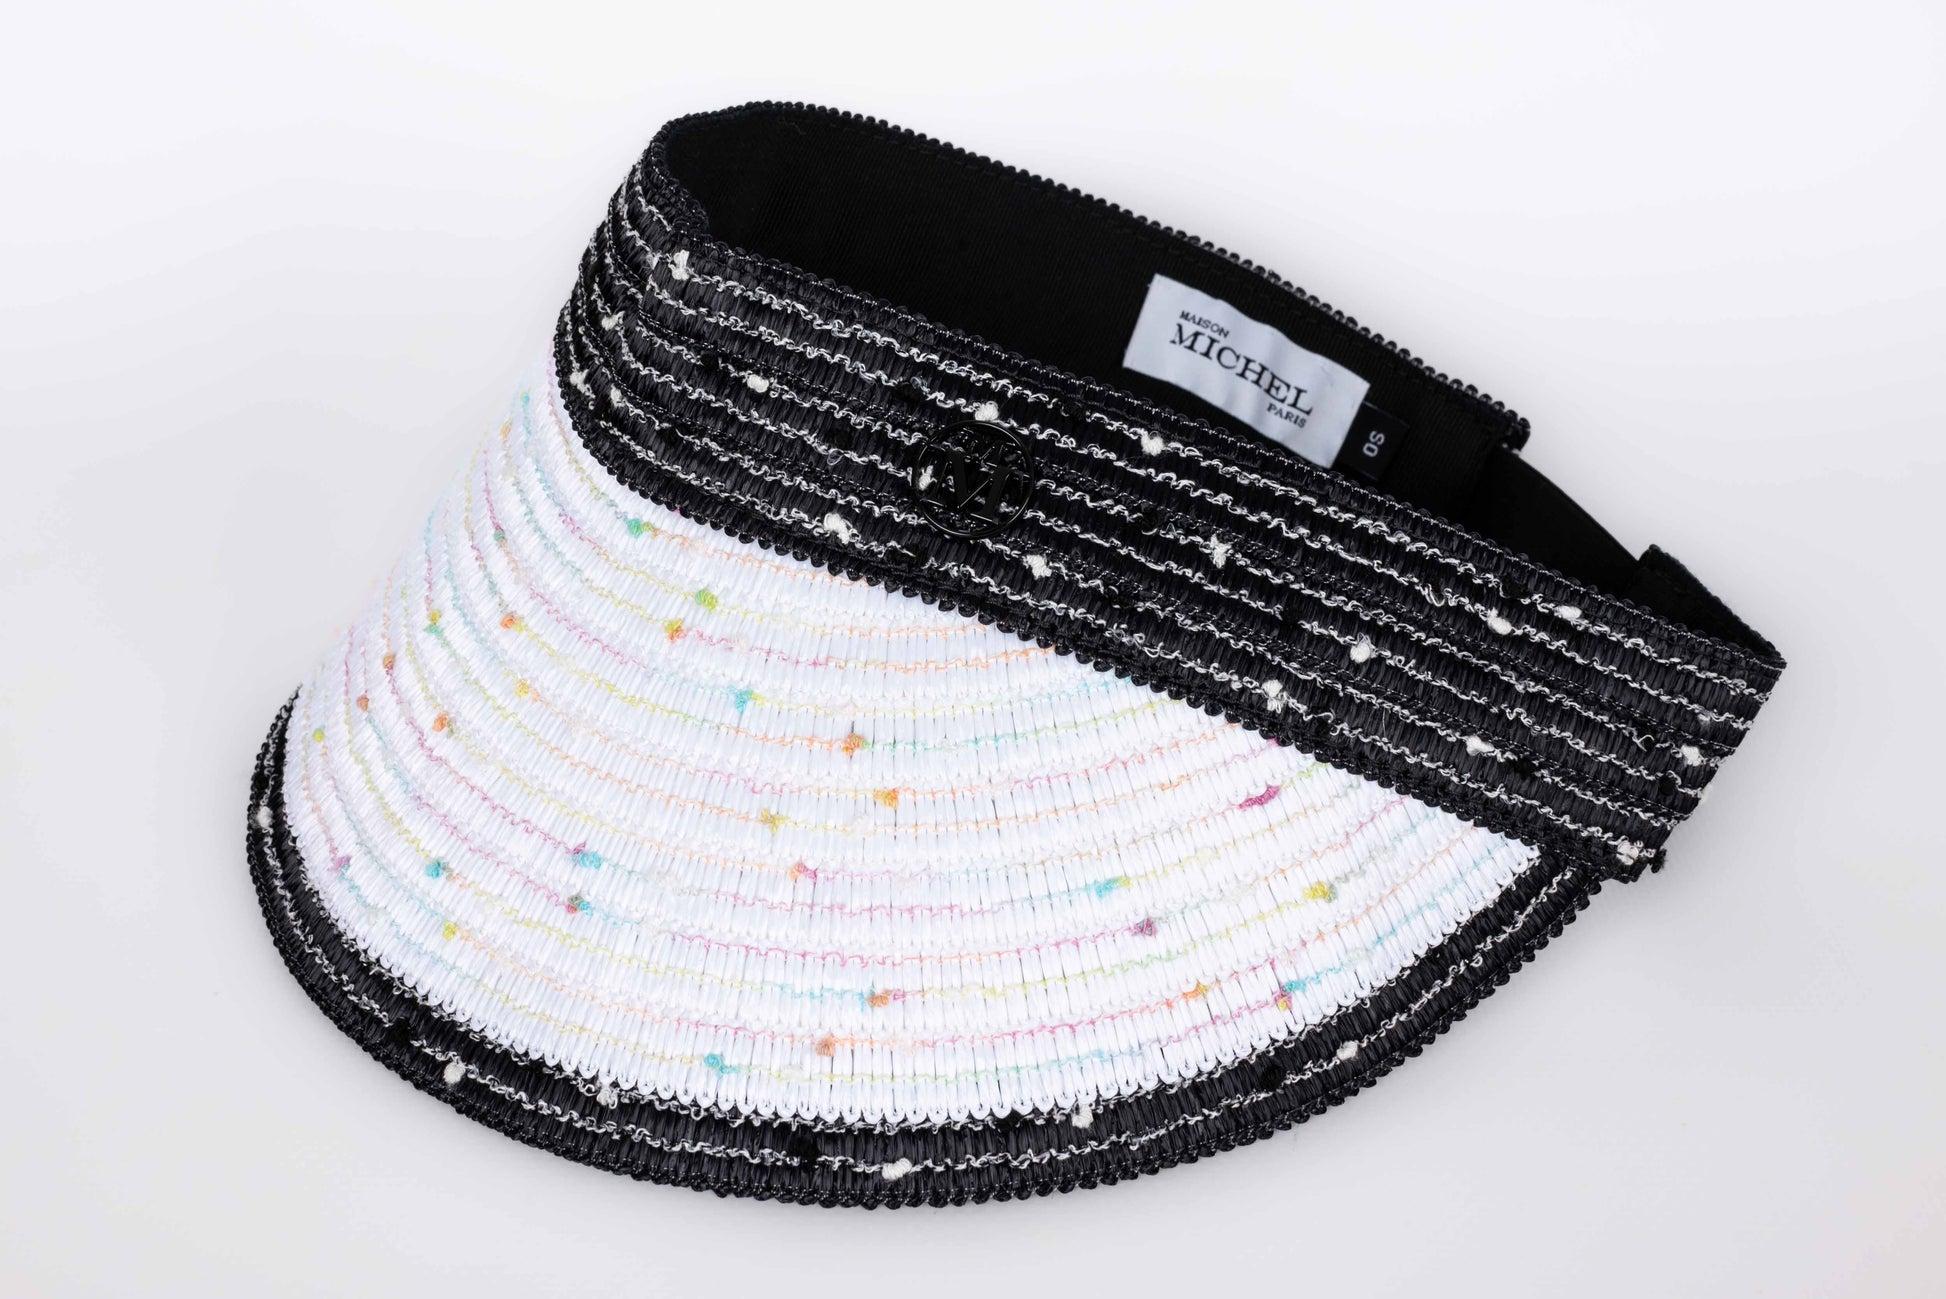 Maison Michel Eyeshade in Black and White Raffia Hat In Excellent Condition For Sale In SAINT-OUEN-SUR-SEINE, FR